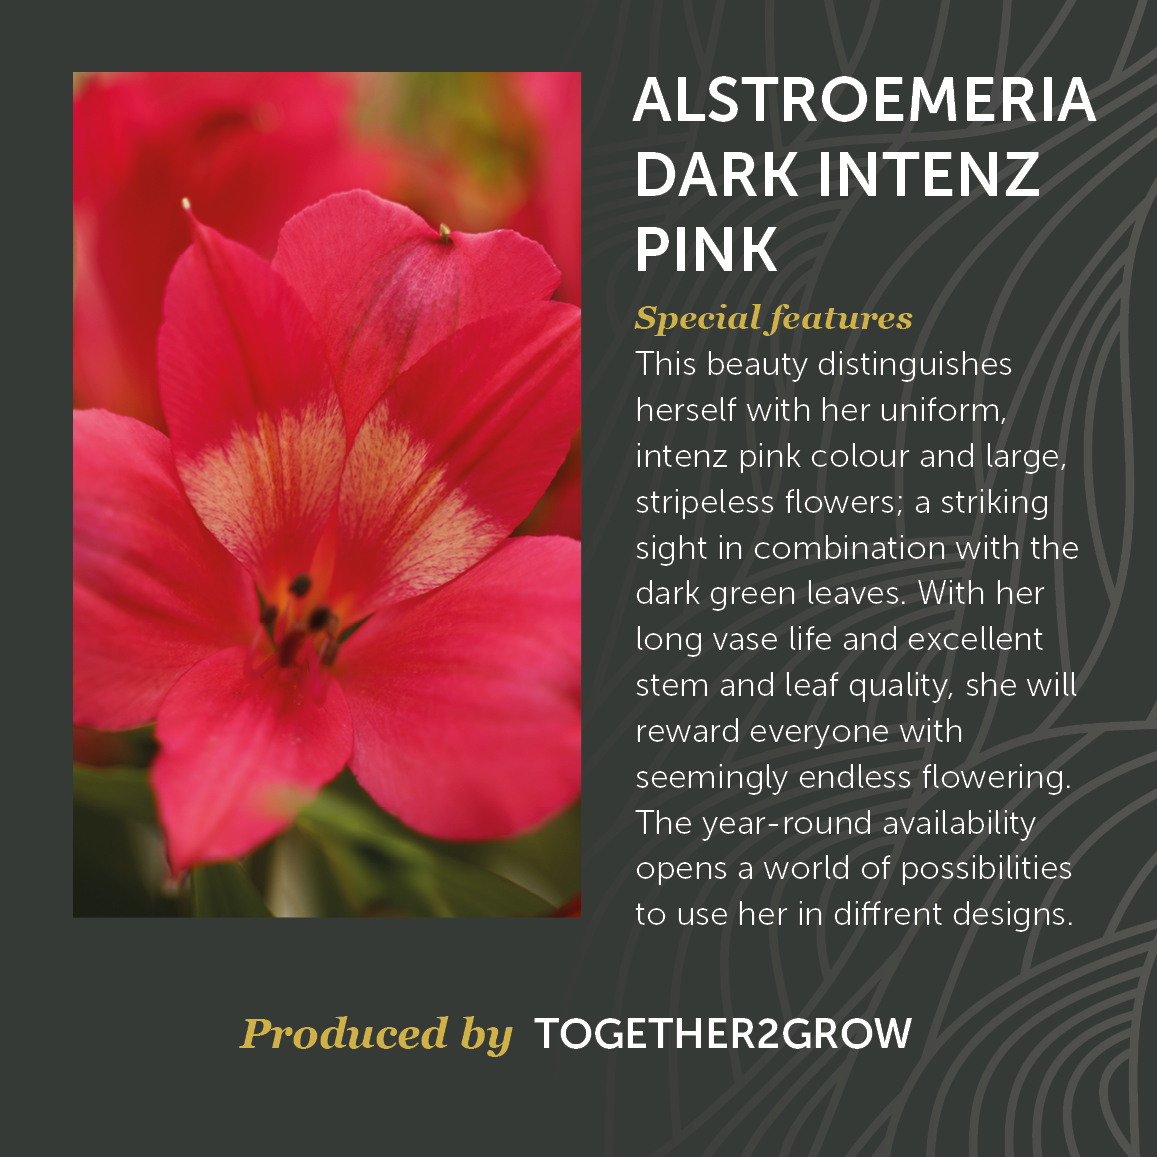 Alstroemeria Dark Intenz Pink